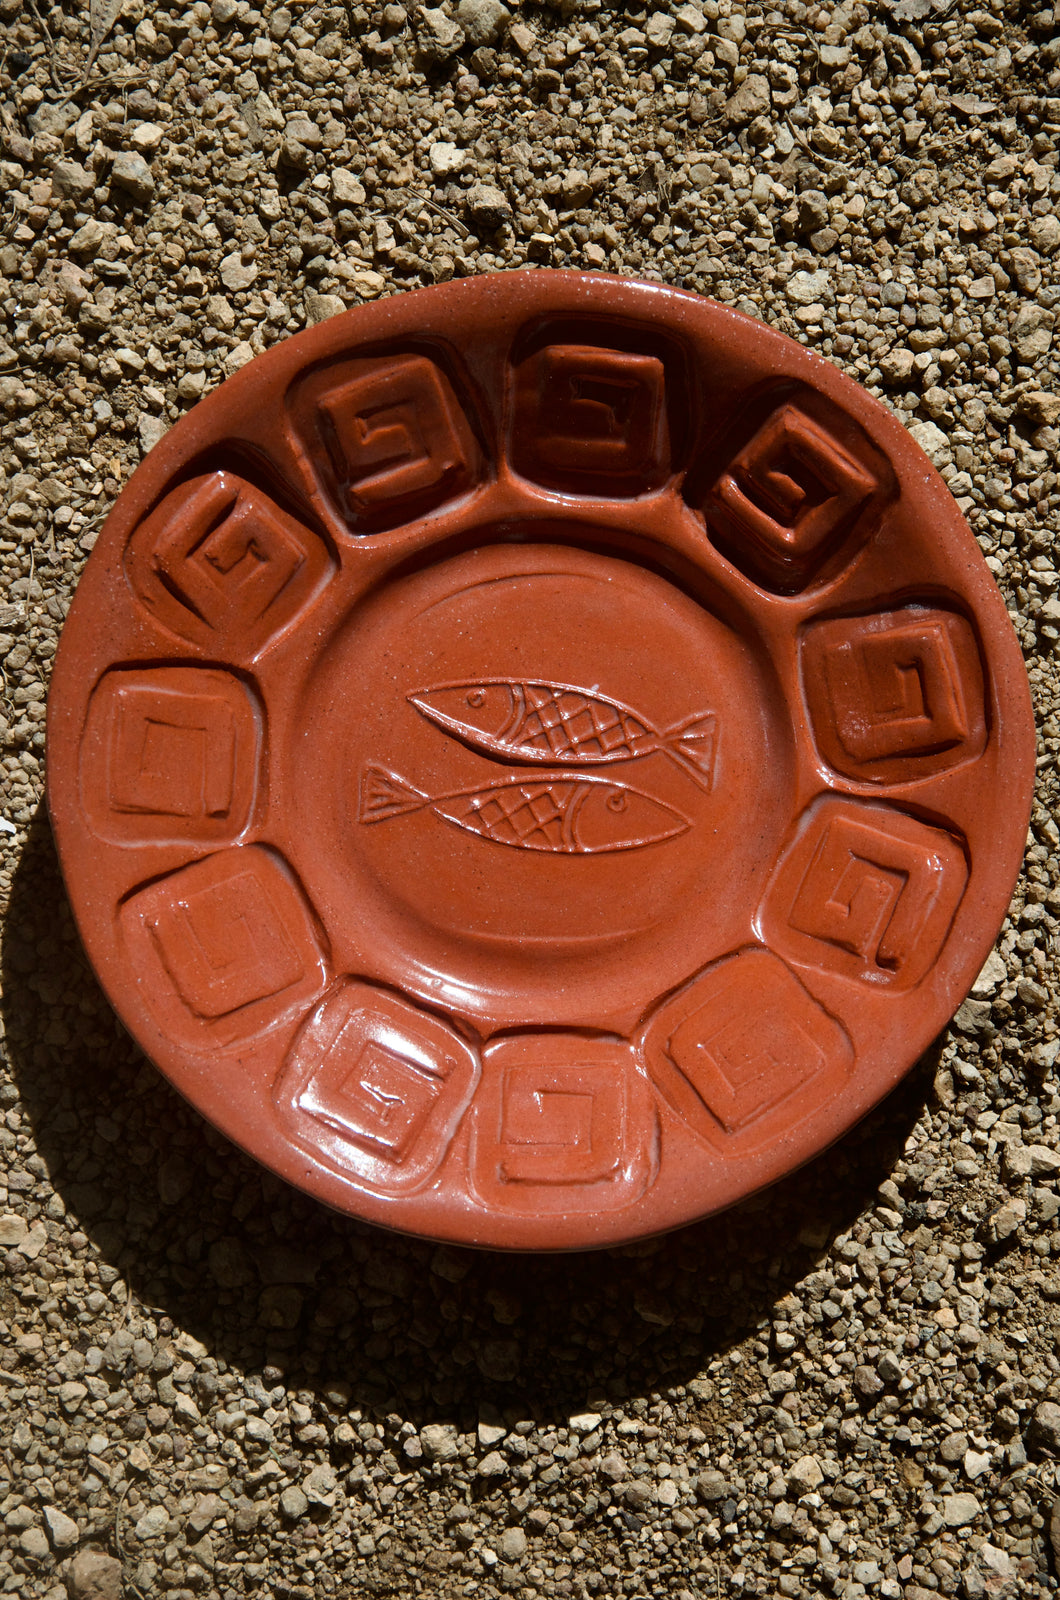 Puglia Plate - Greek Key Pattern Plate with brass wall hook